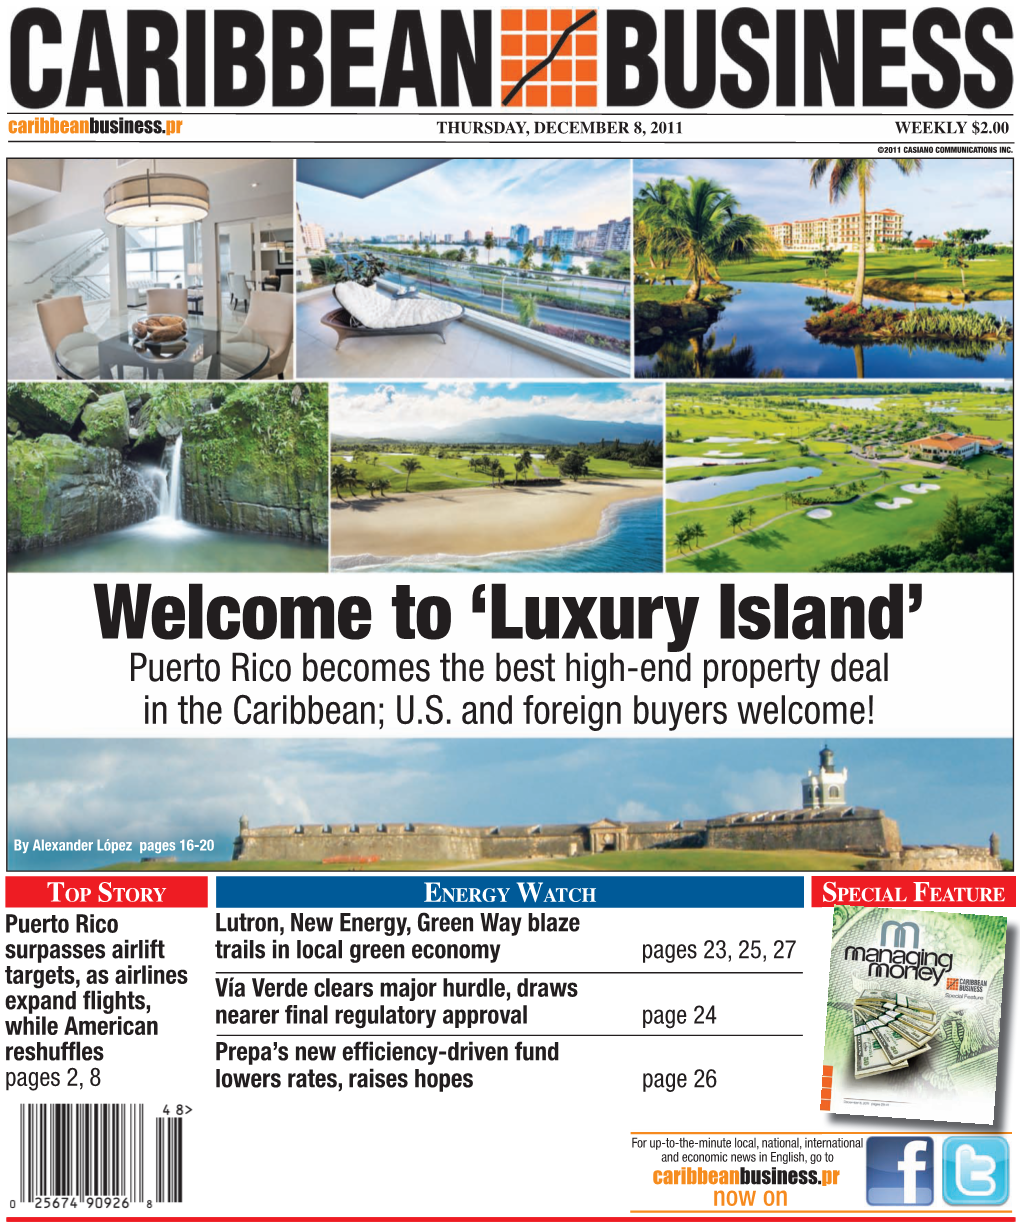 Welcome to 'Luxury Island'